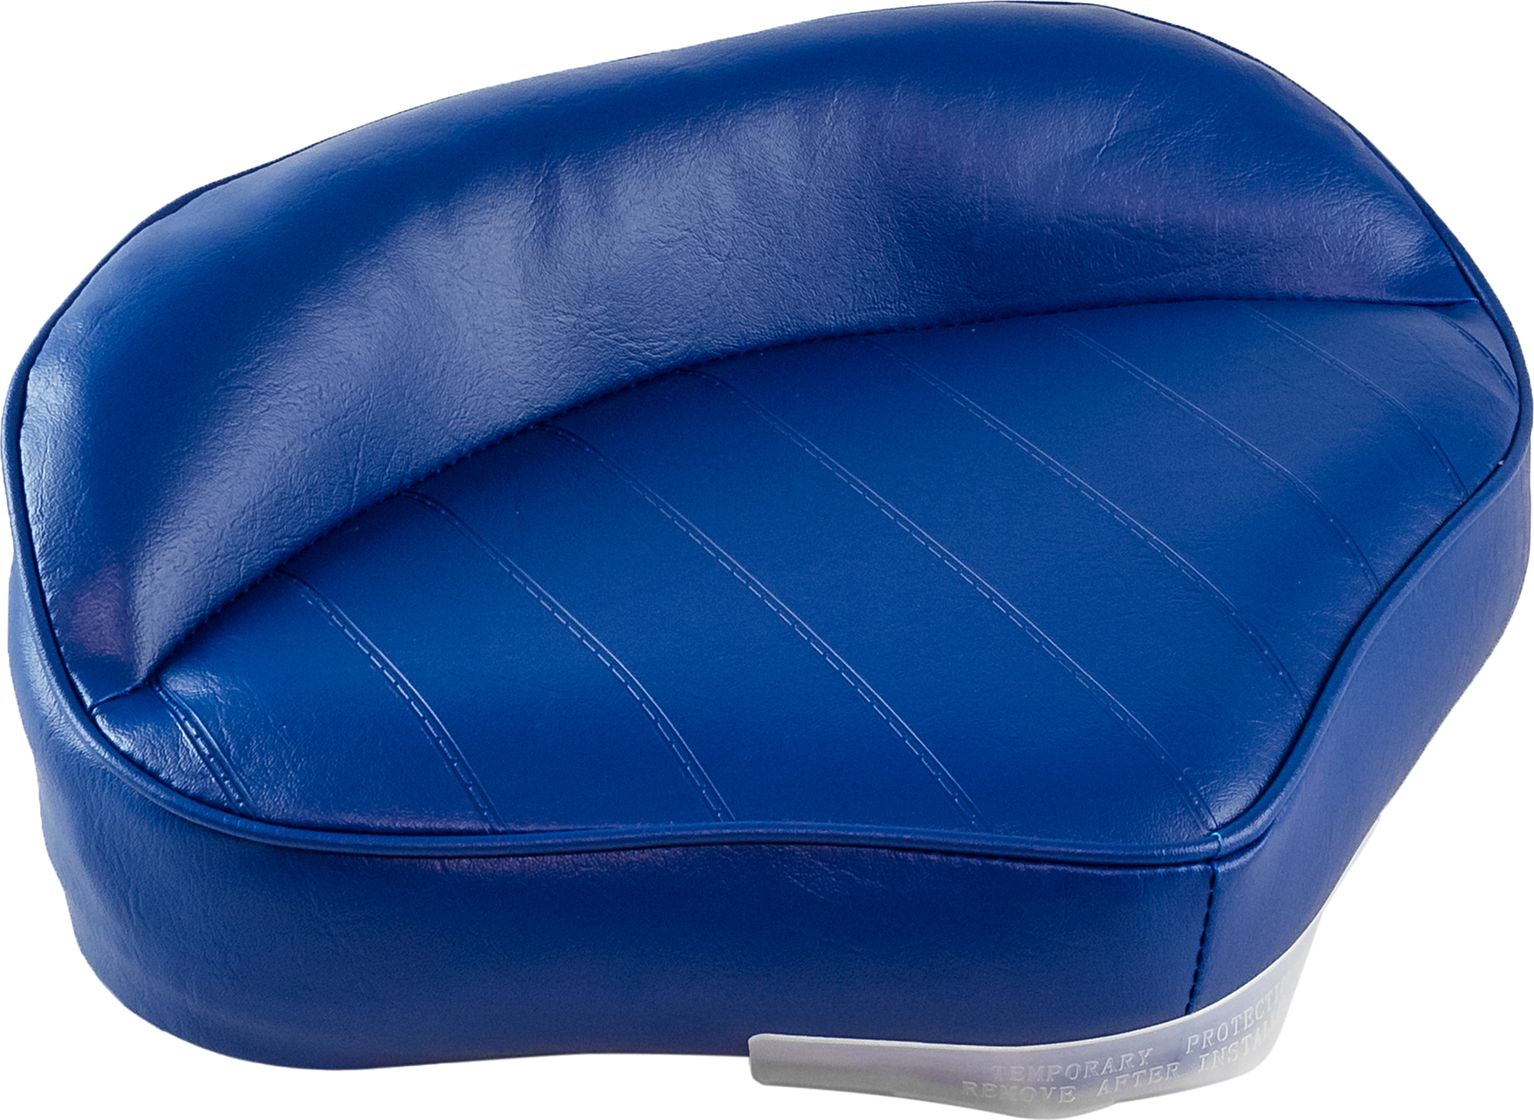 Сиденье мягкое PRO CASTING, обивка синий винил 75104B кресло мягкое deluxe sport с откидным валиком белый синий 1043251